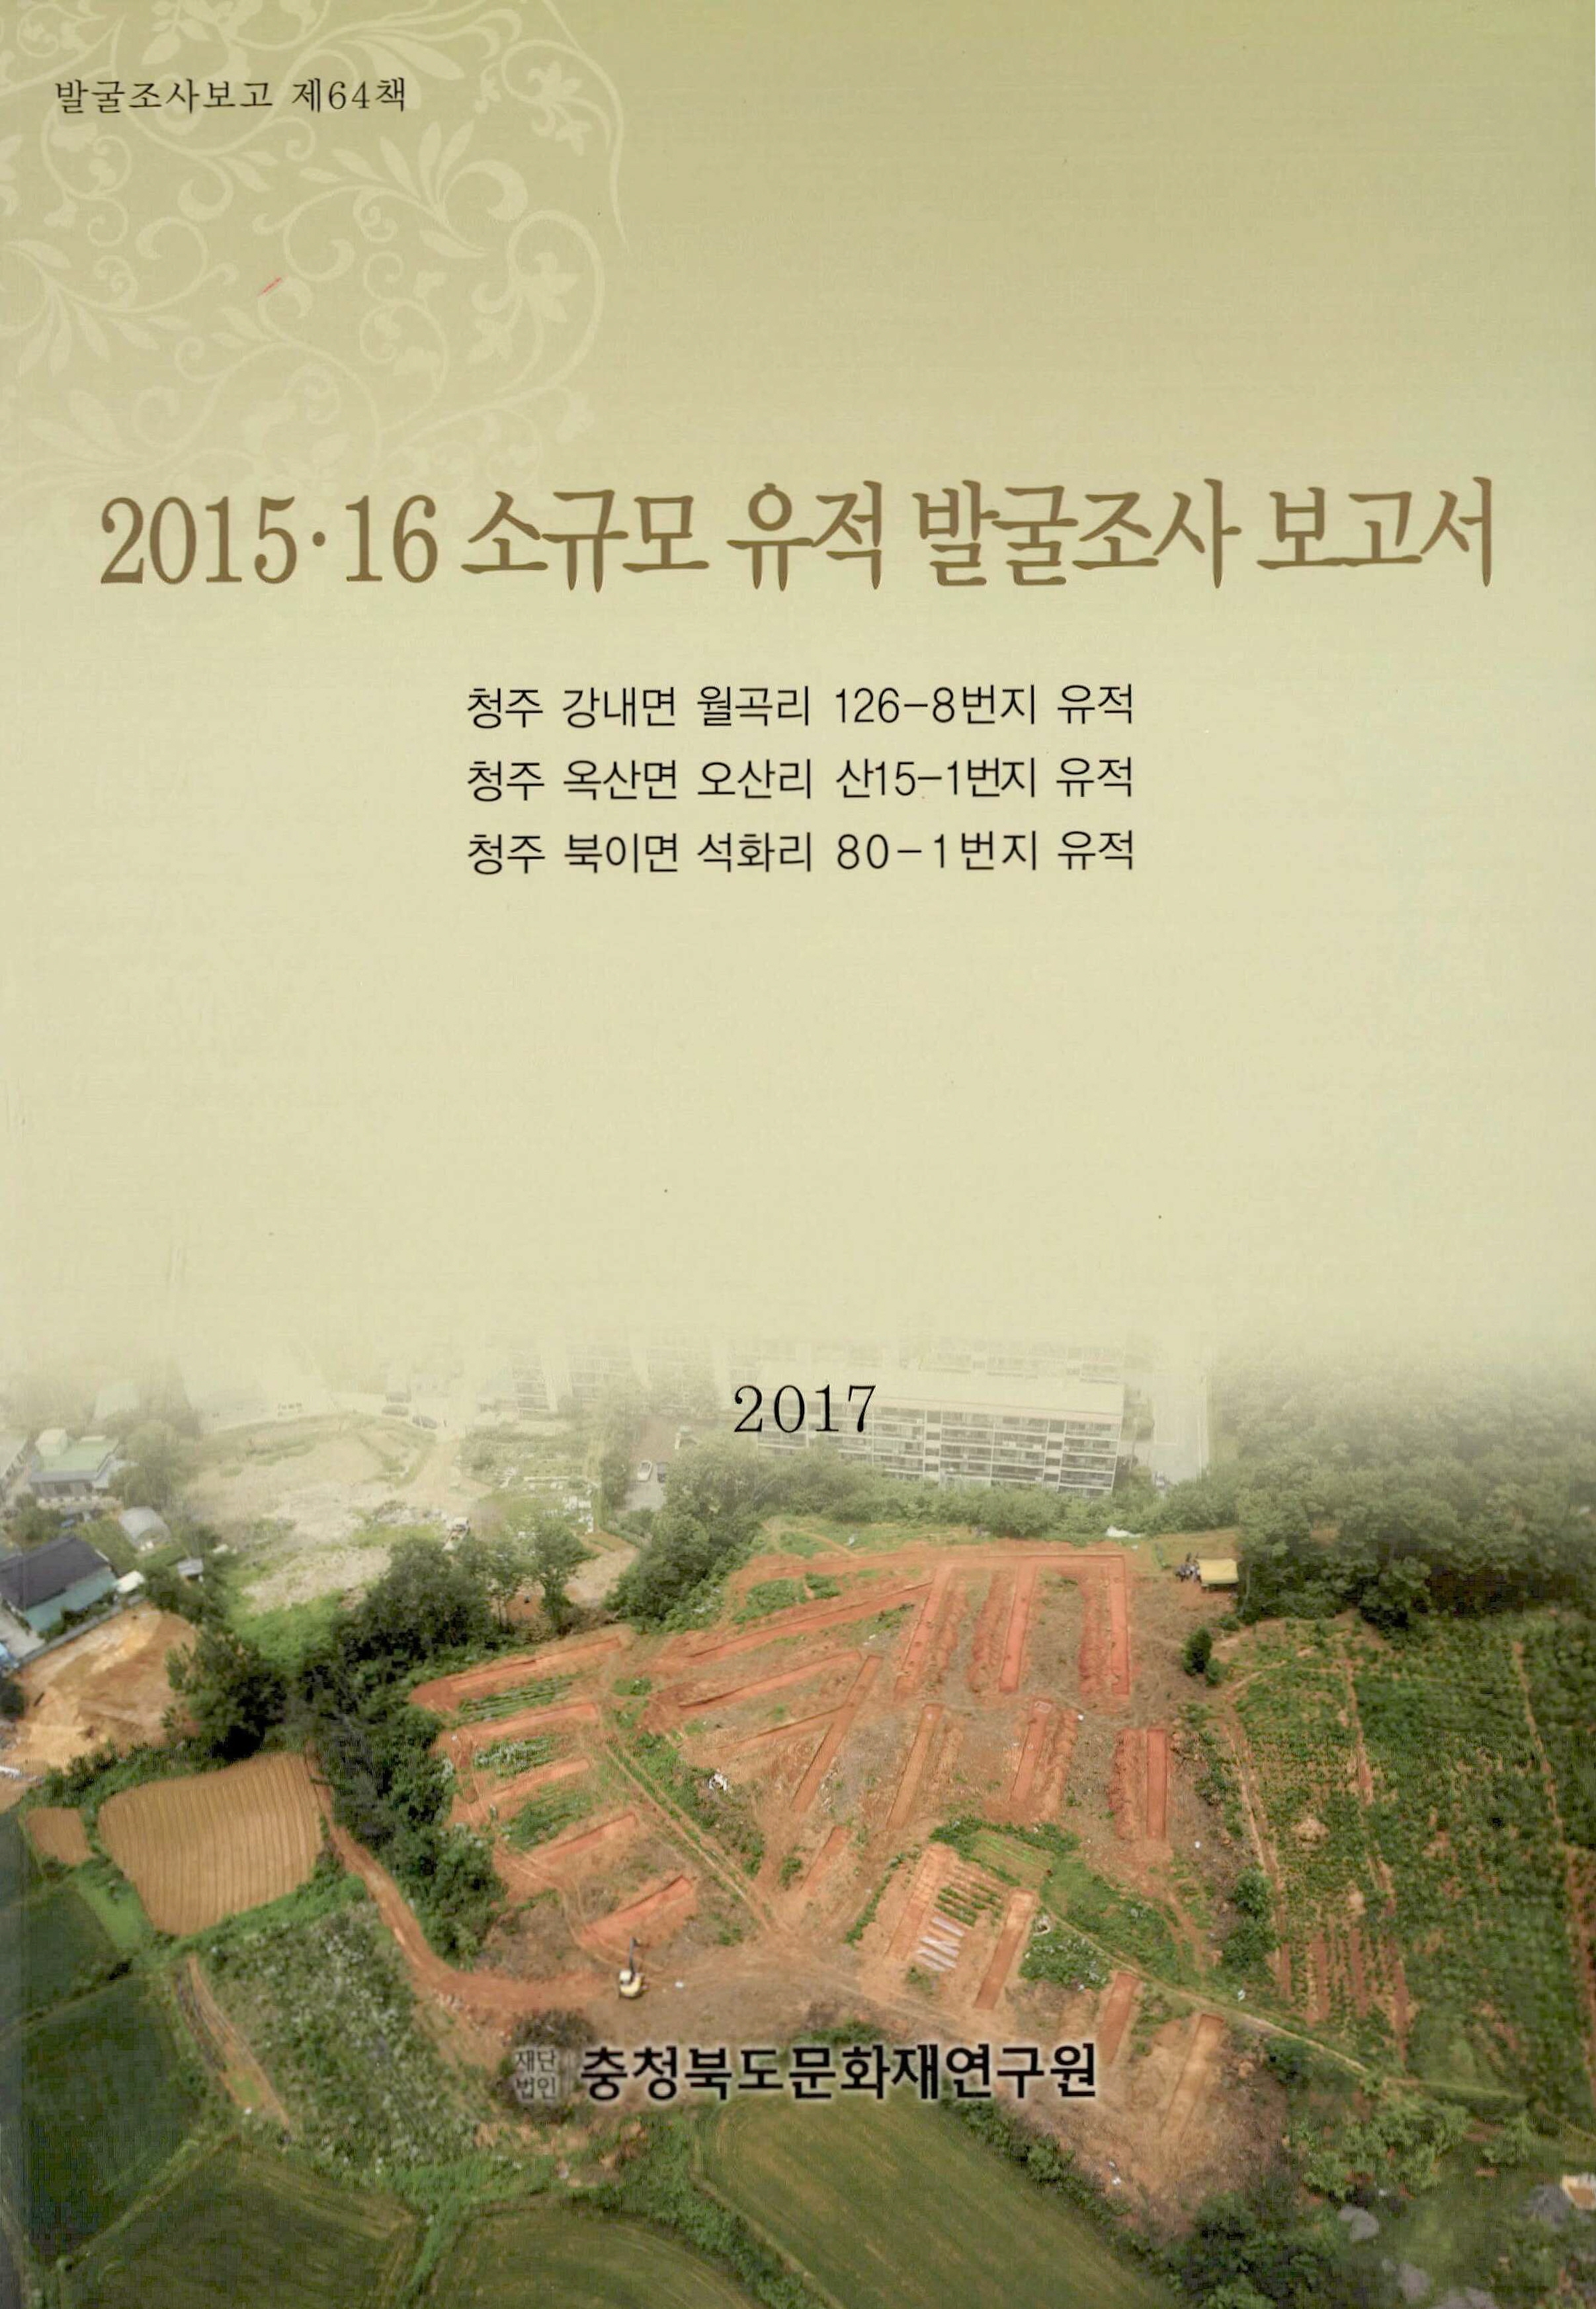 발굴조사보고 2015.16 소규모 발굴조사 보고서